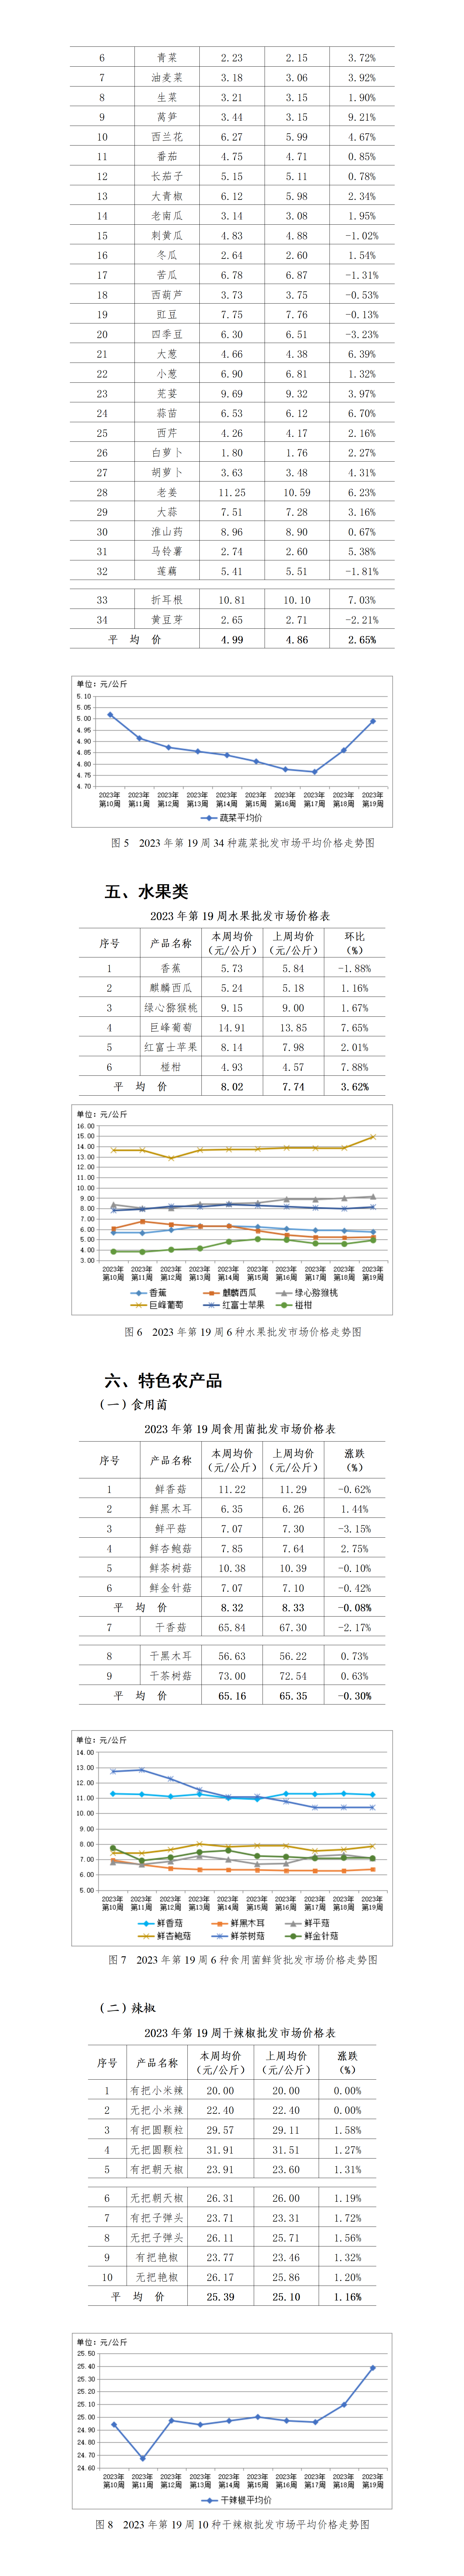 2023年19周-贵州省农产品批发市场价格监测周报-定_01(1)